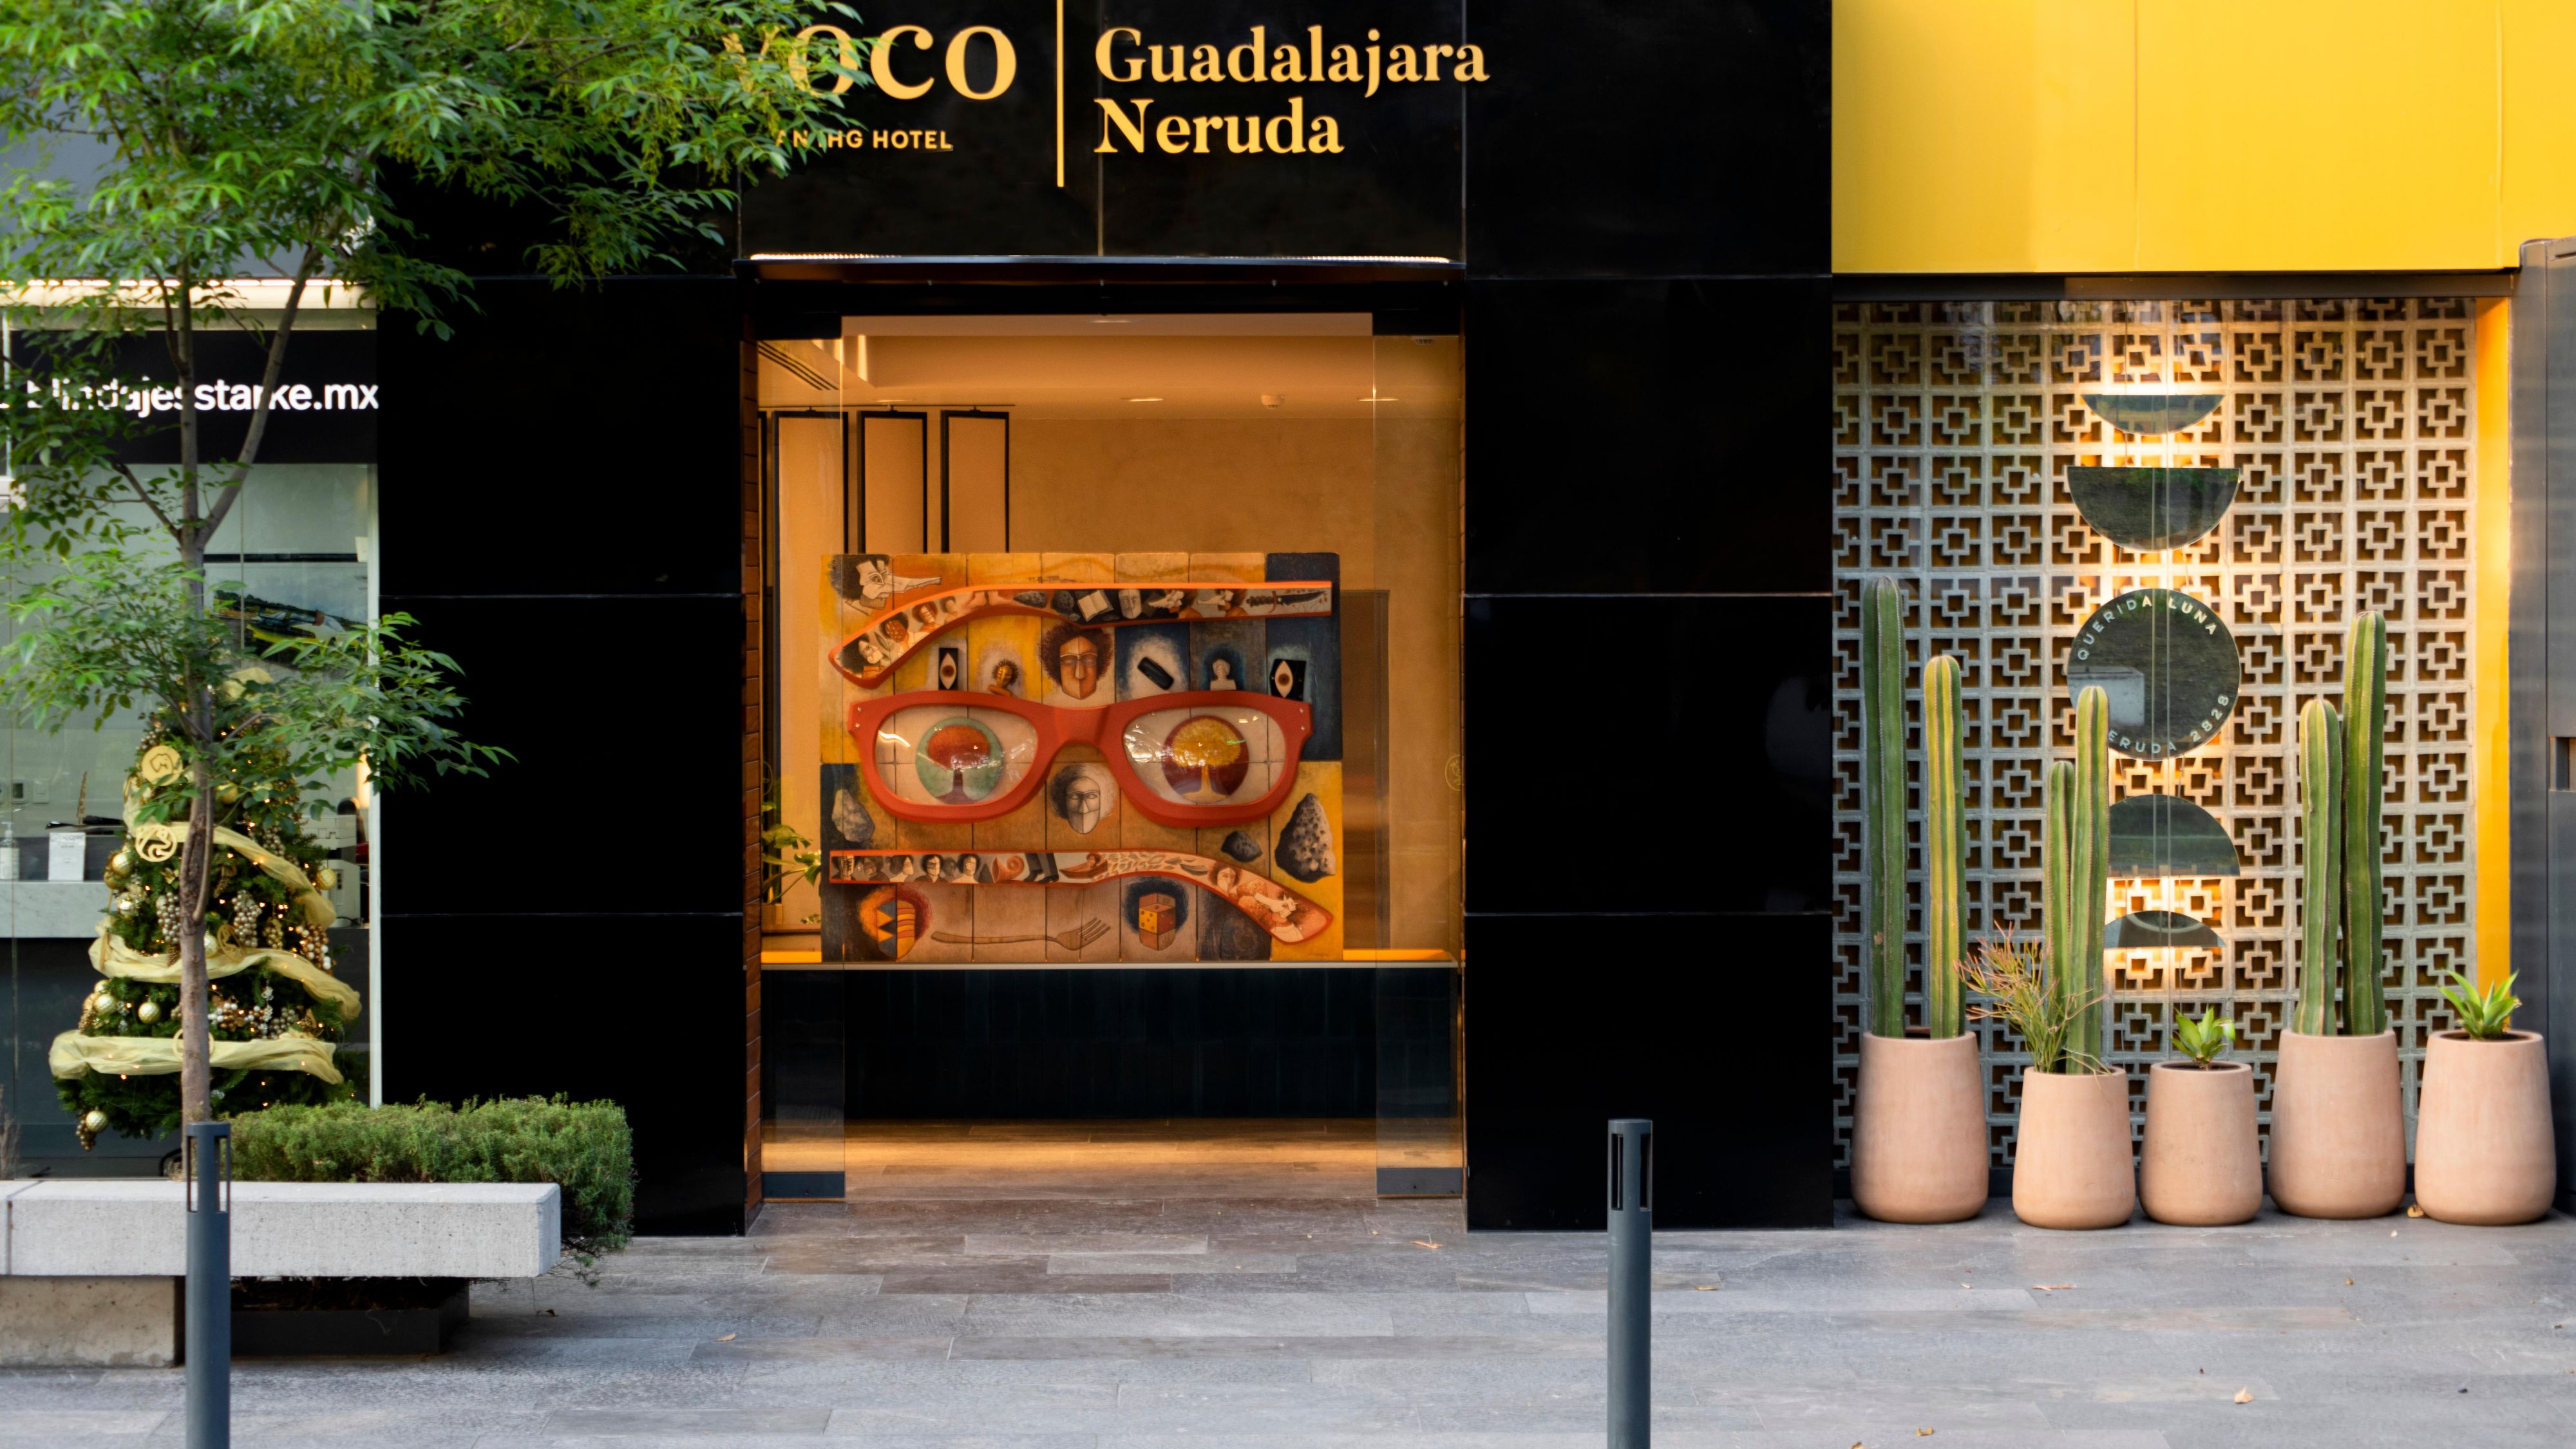 voco Guadalajara Neruda ภายนอกโรงแรม